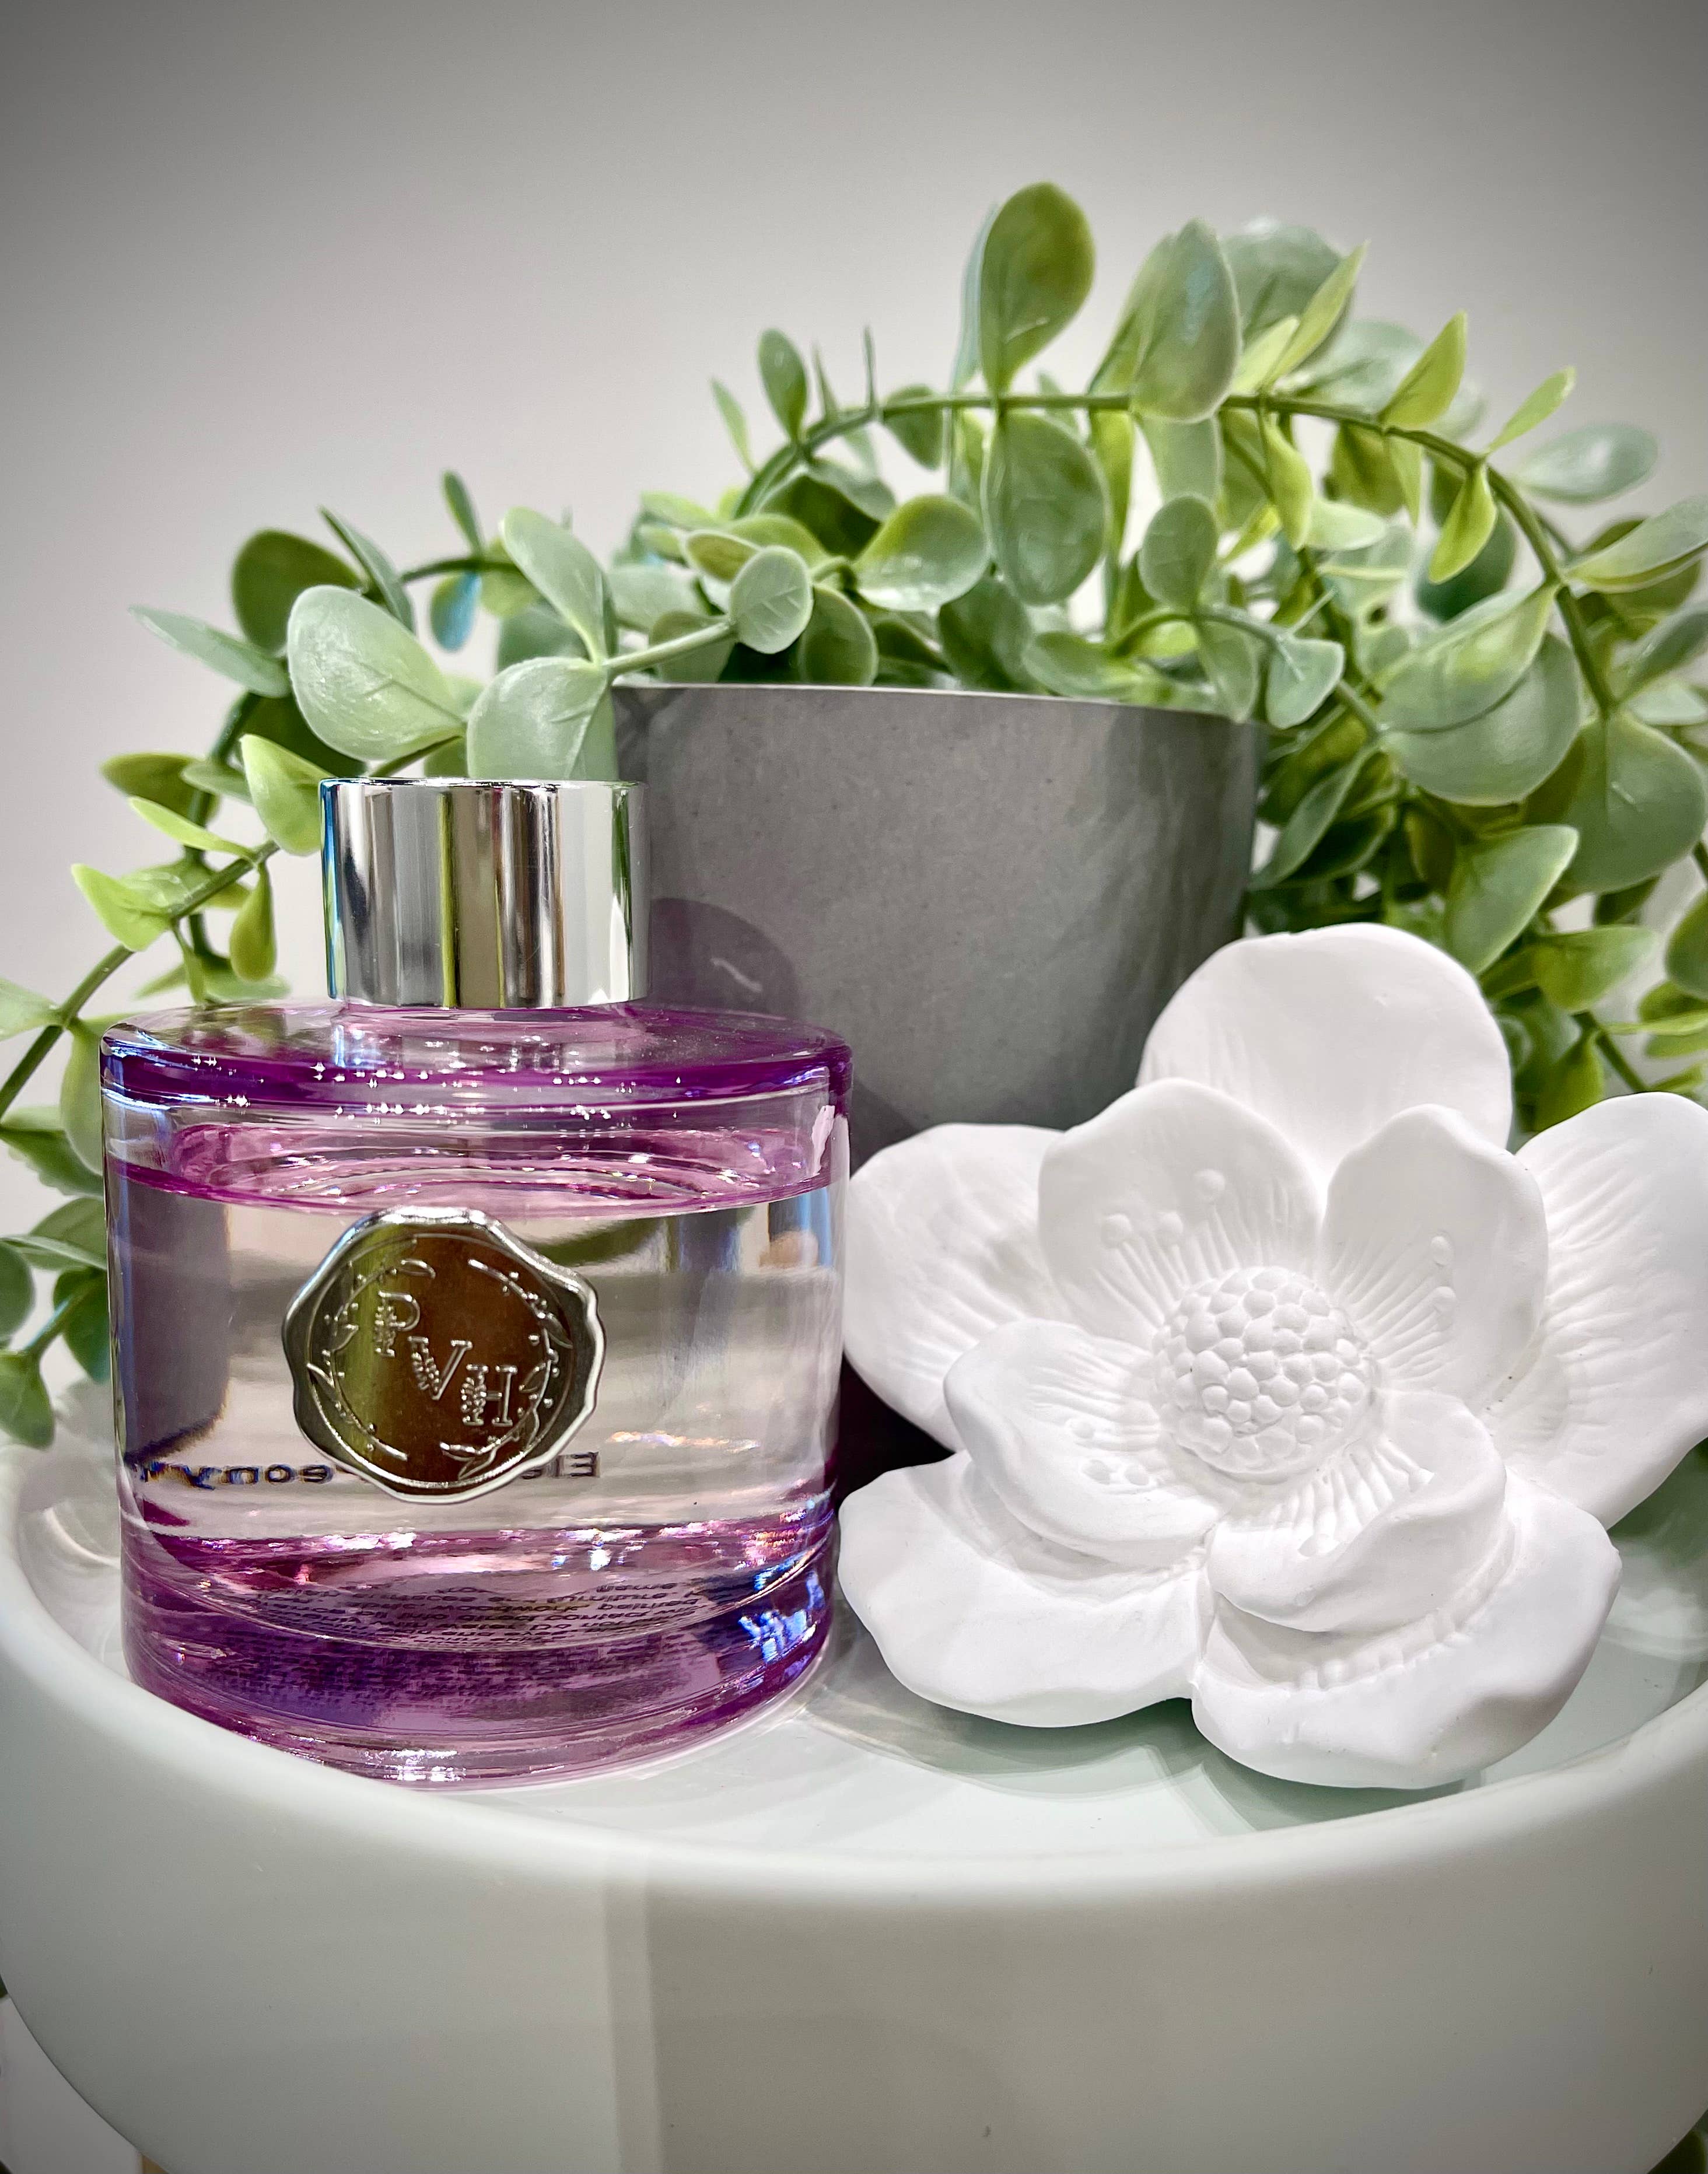 Lilac Magnolia Flower Diffuser Gift Set - Fleur de Lys